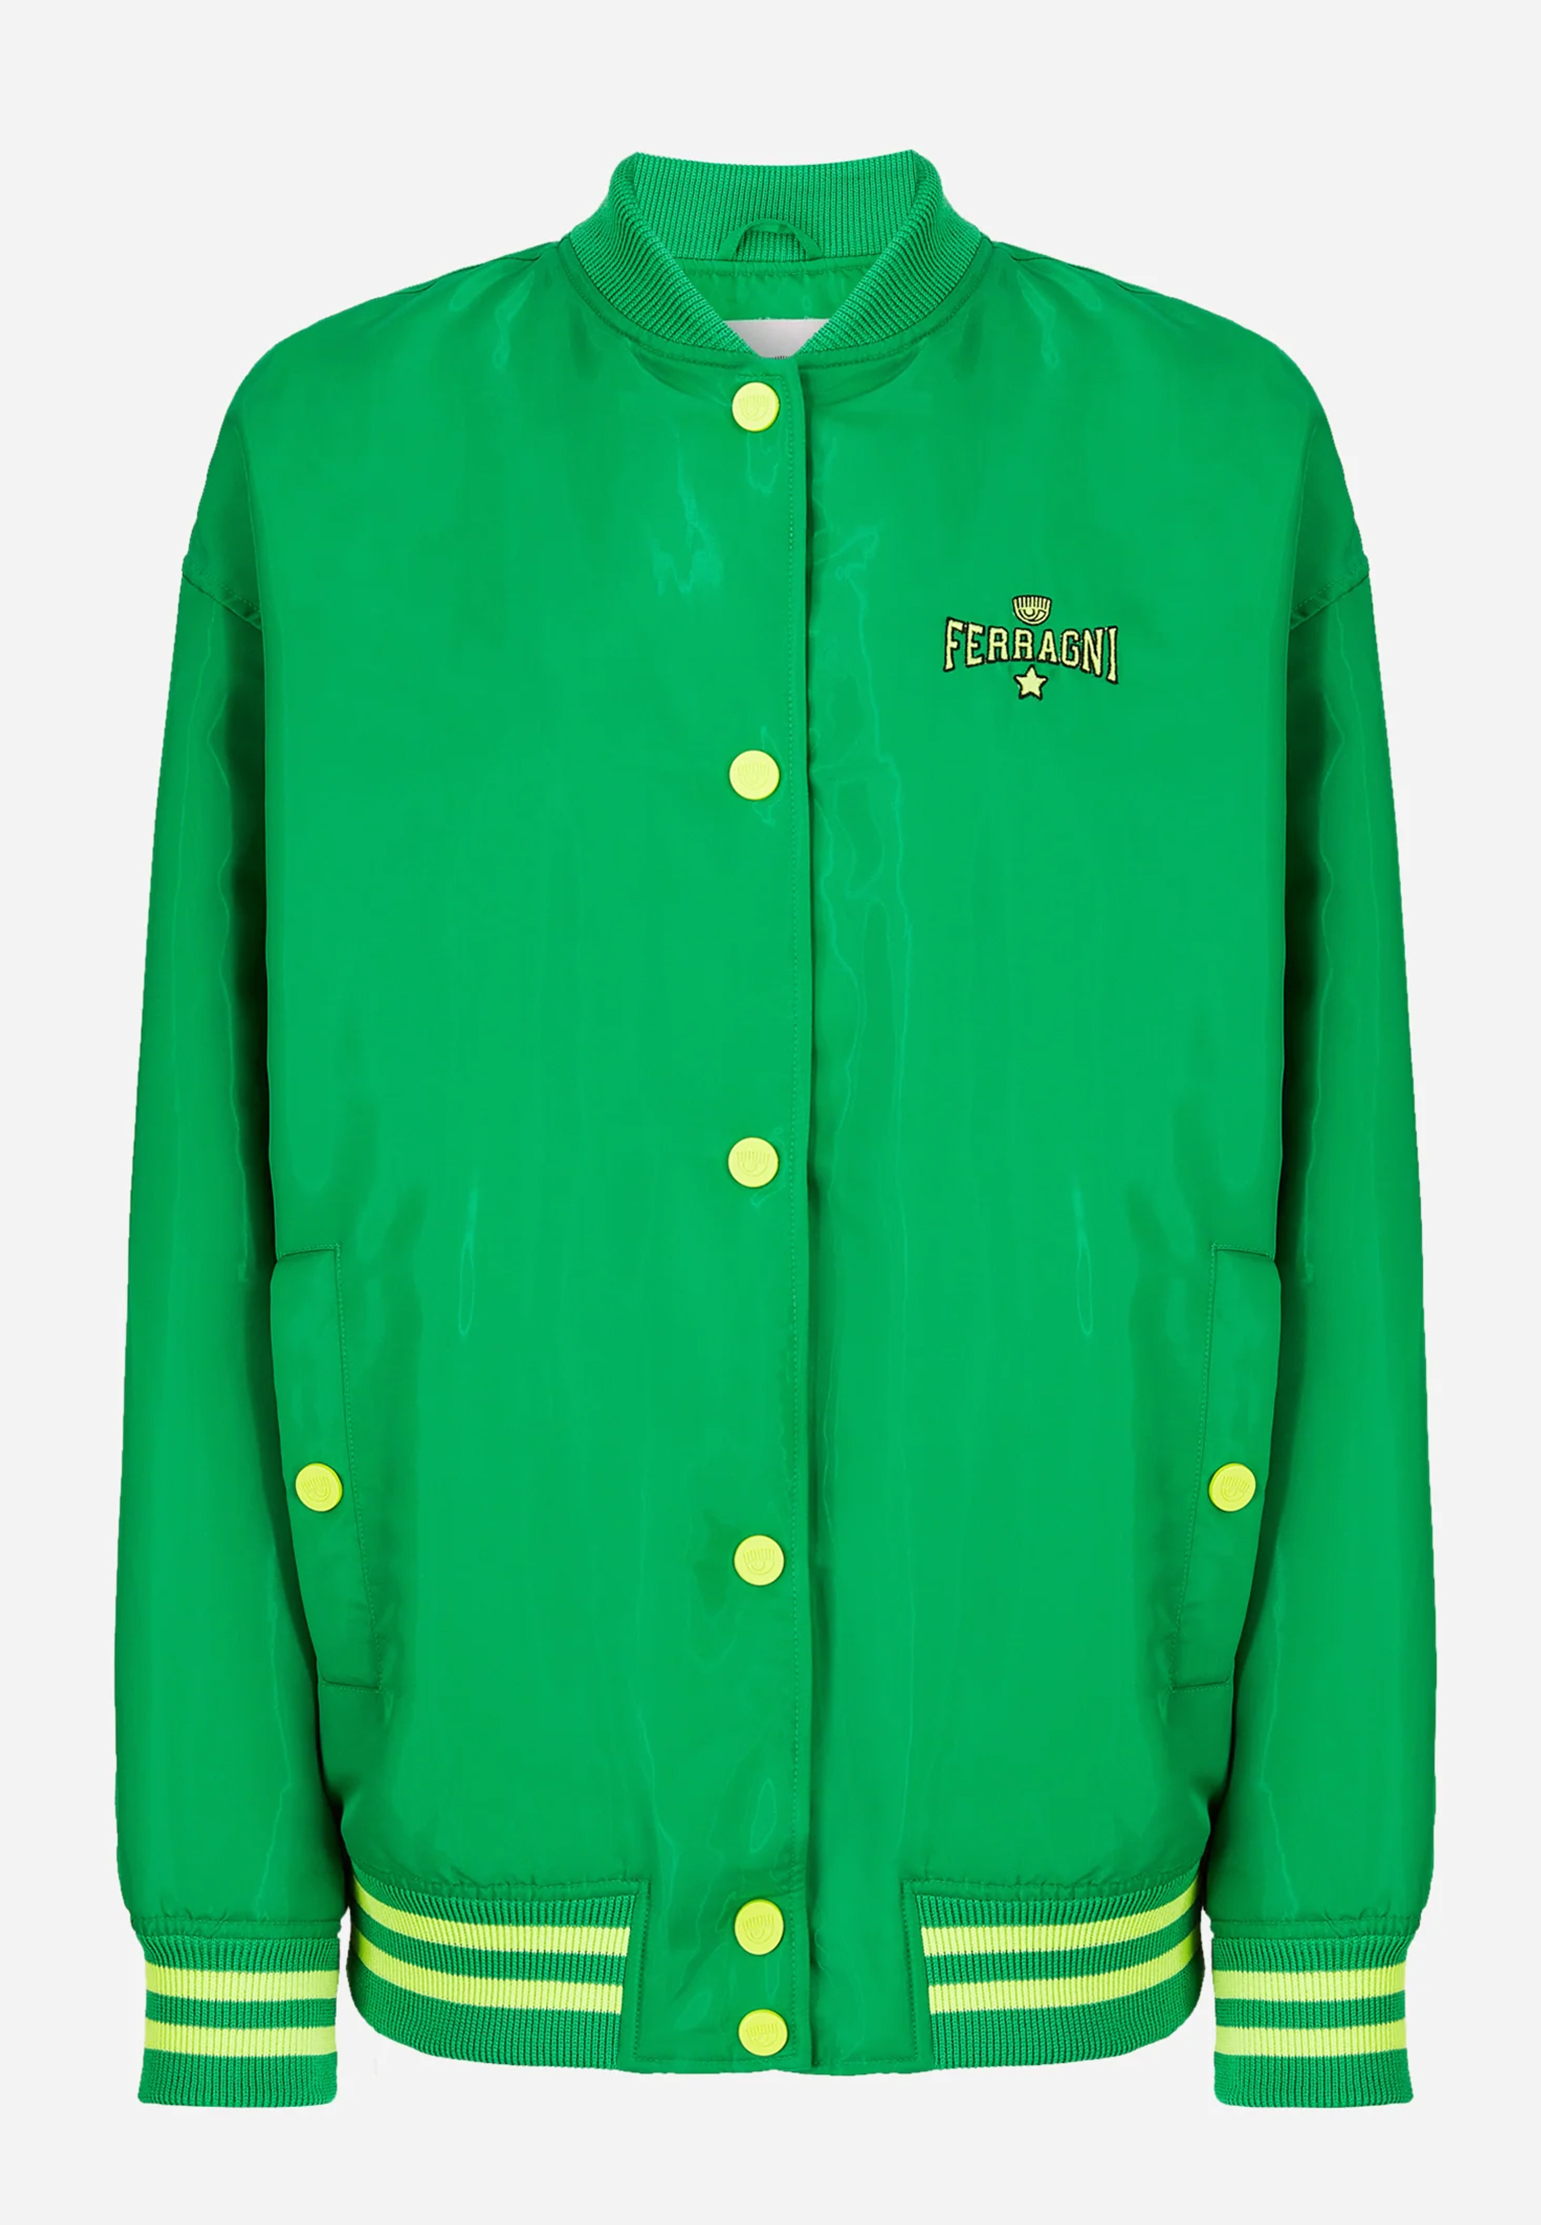 Бомбер CHIARA FERRAGNI Зеленый, размер 38 149982 - фото 1